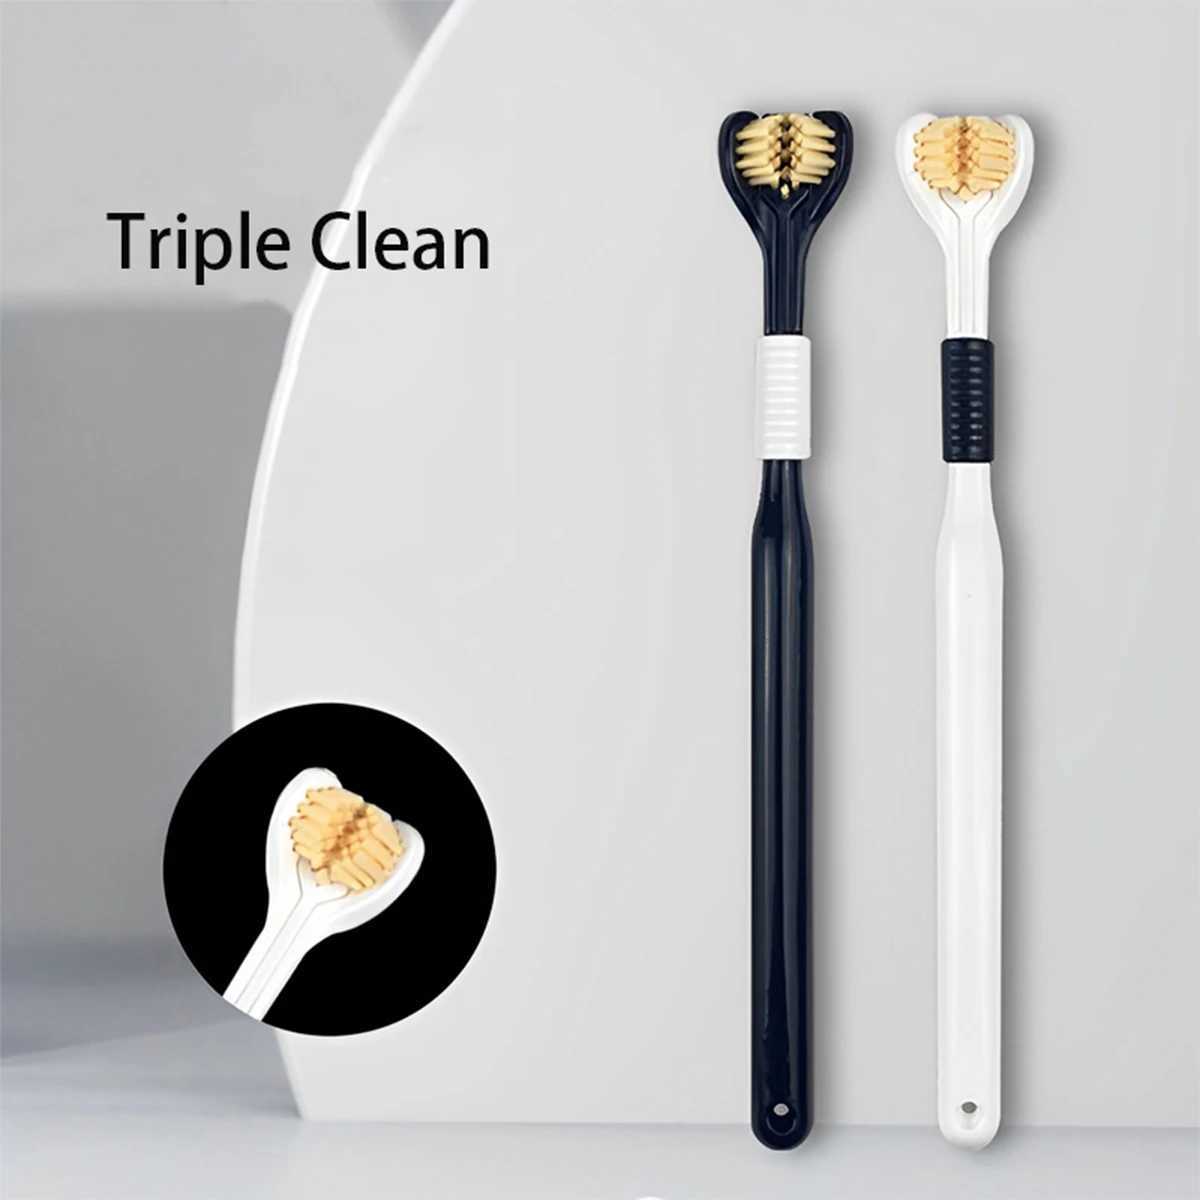 Tandenborstel Driezijdige tandenborstel Zachte borstelharen Tongschrapen Drie koppen U-vormig Drie zijden tegelijk Drievoudige reiniging Draagbaar Voor thuis